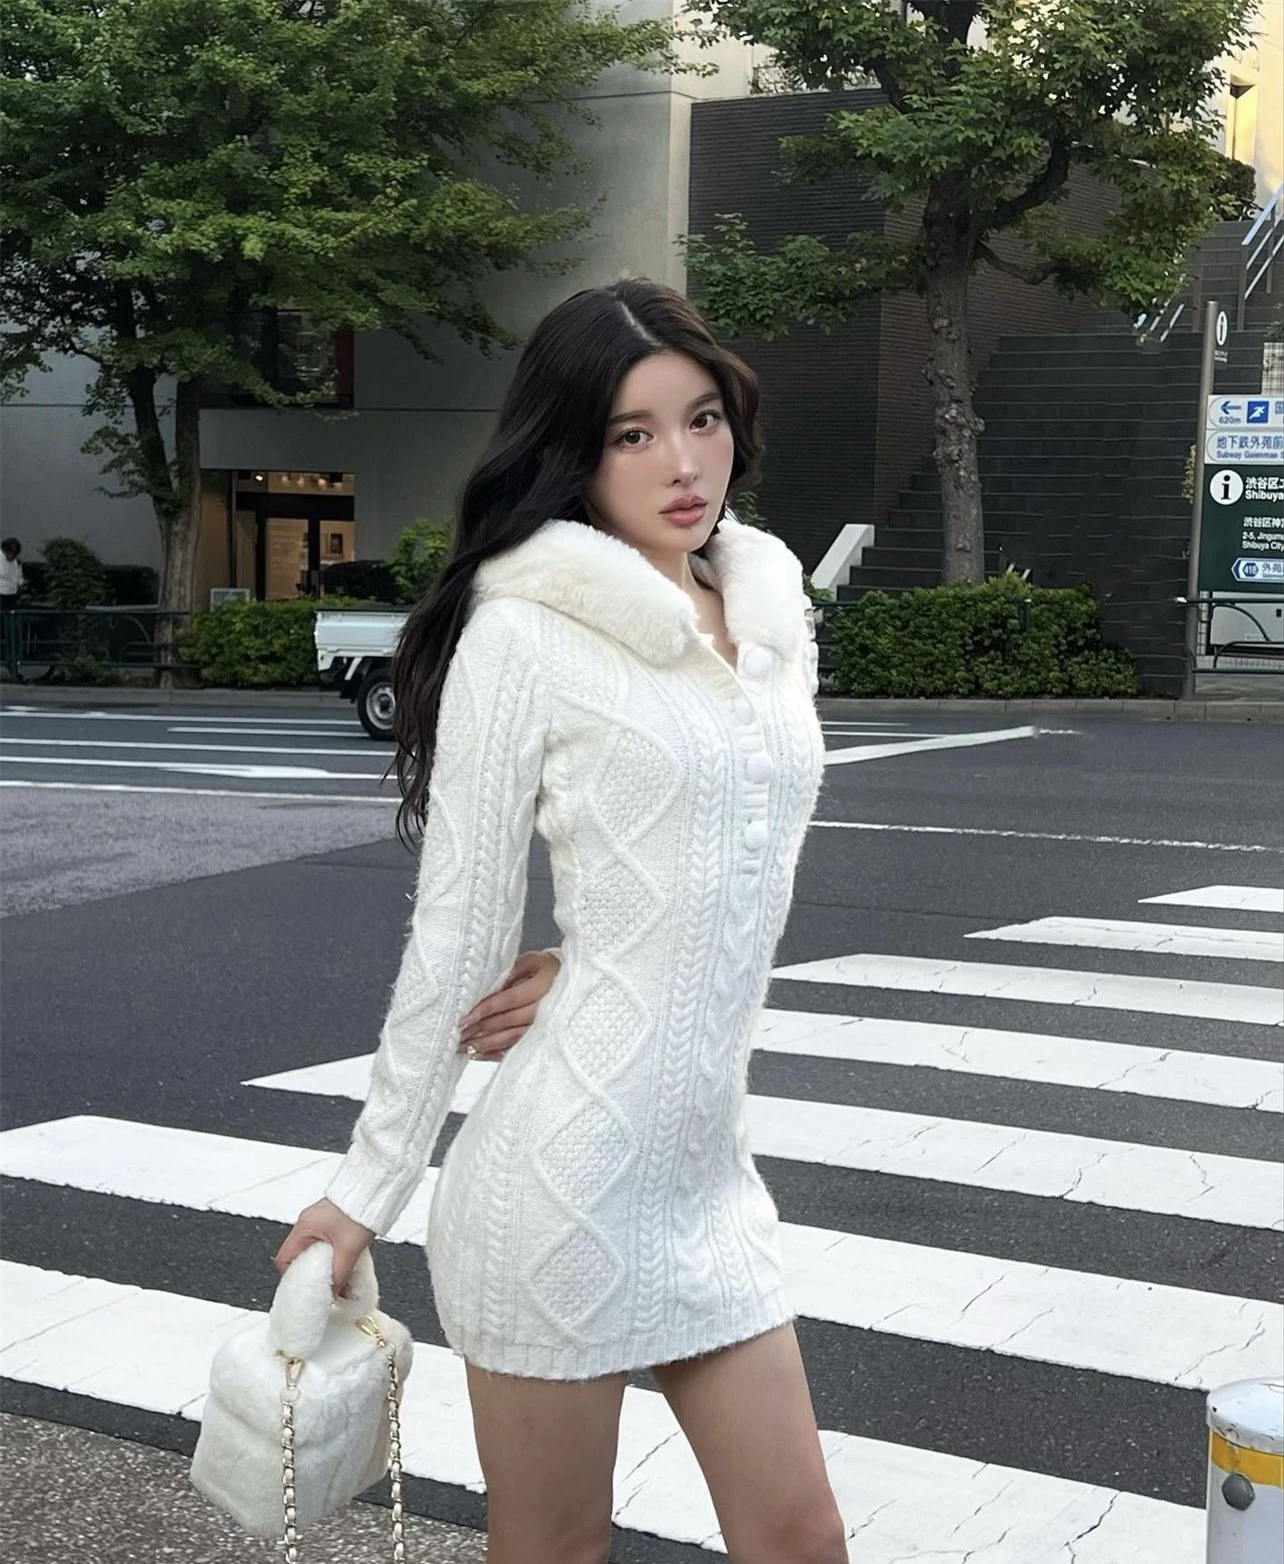 Hot girl Nhật gây sốt với visual như idol Kpop, gu ăn mặc cũng 